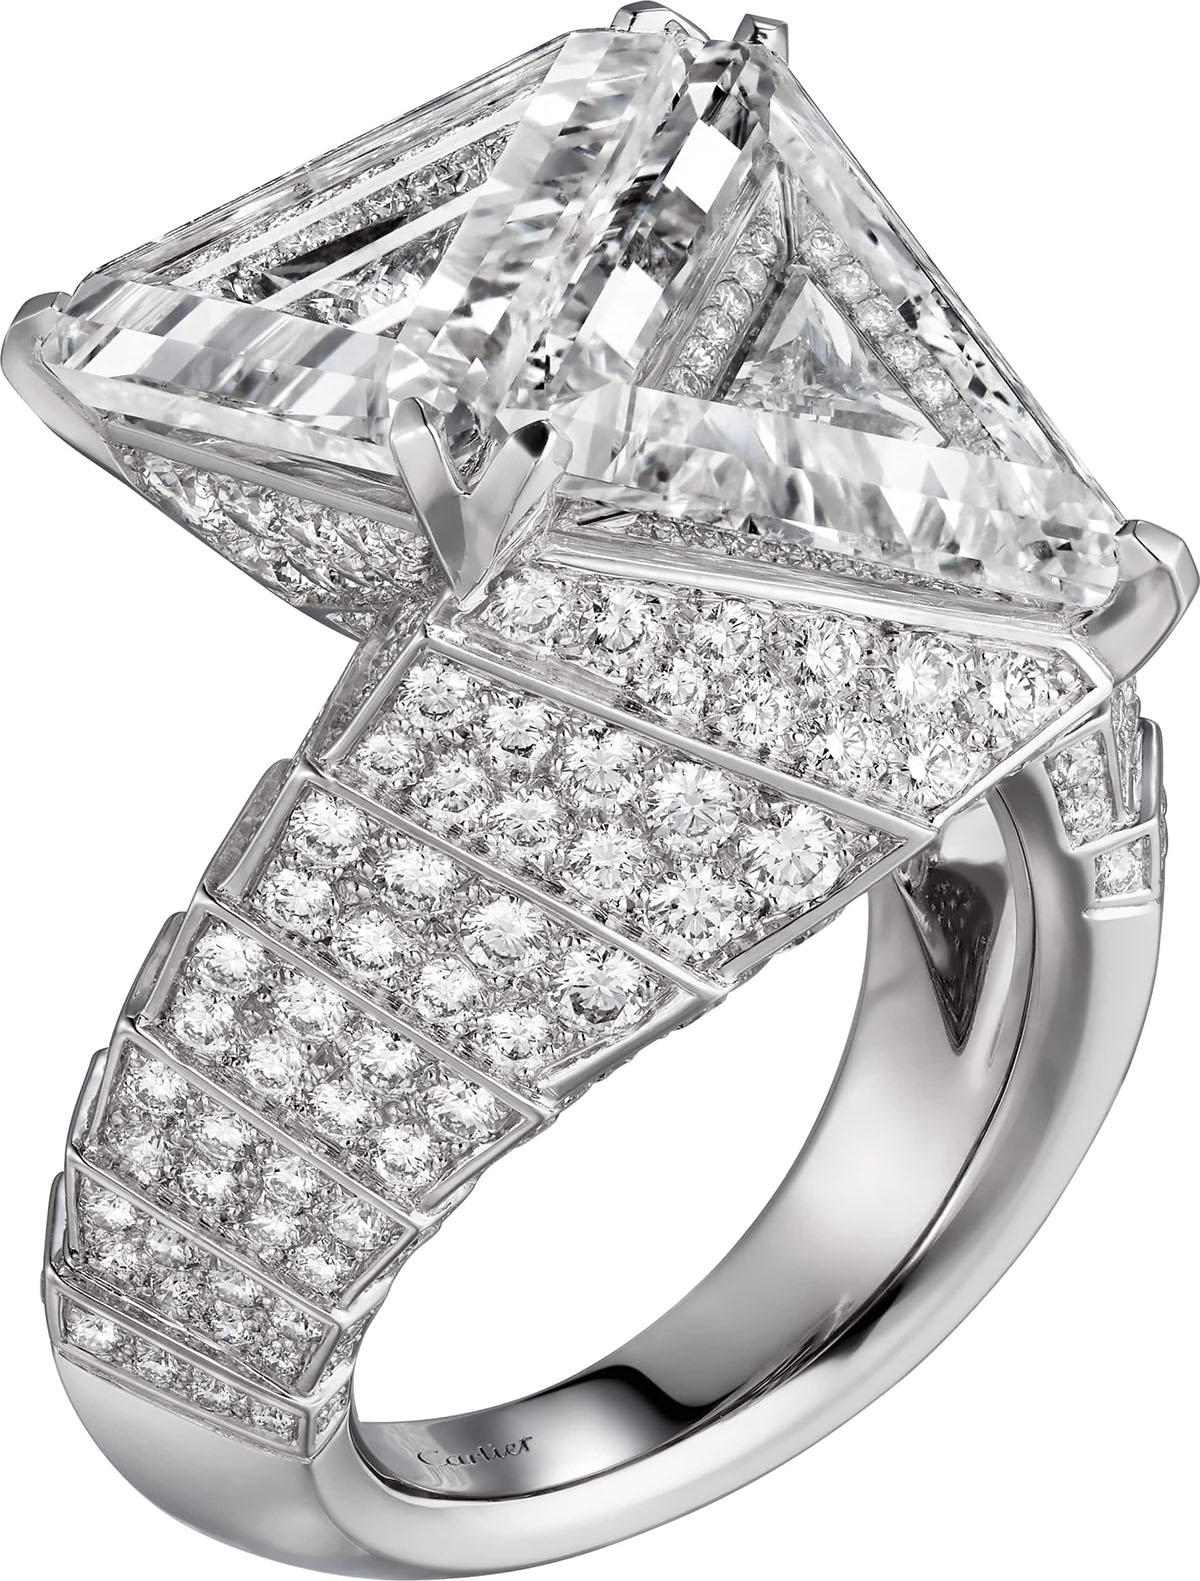 Платиновое кольцо Karet с бриллиантами.  Фото: Раздаточный материал